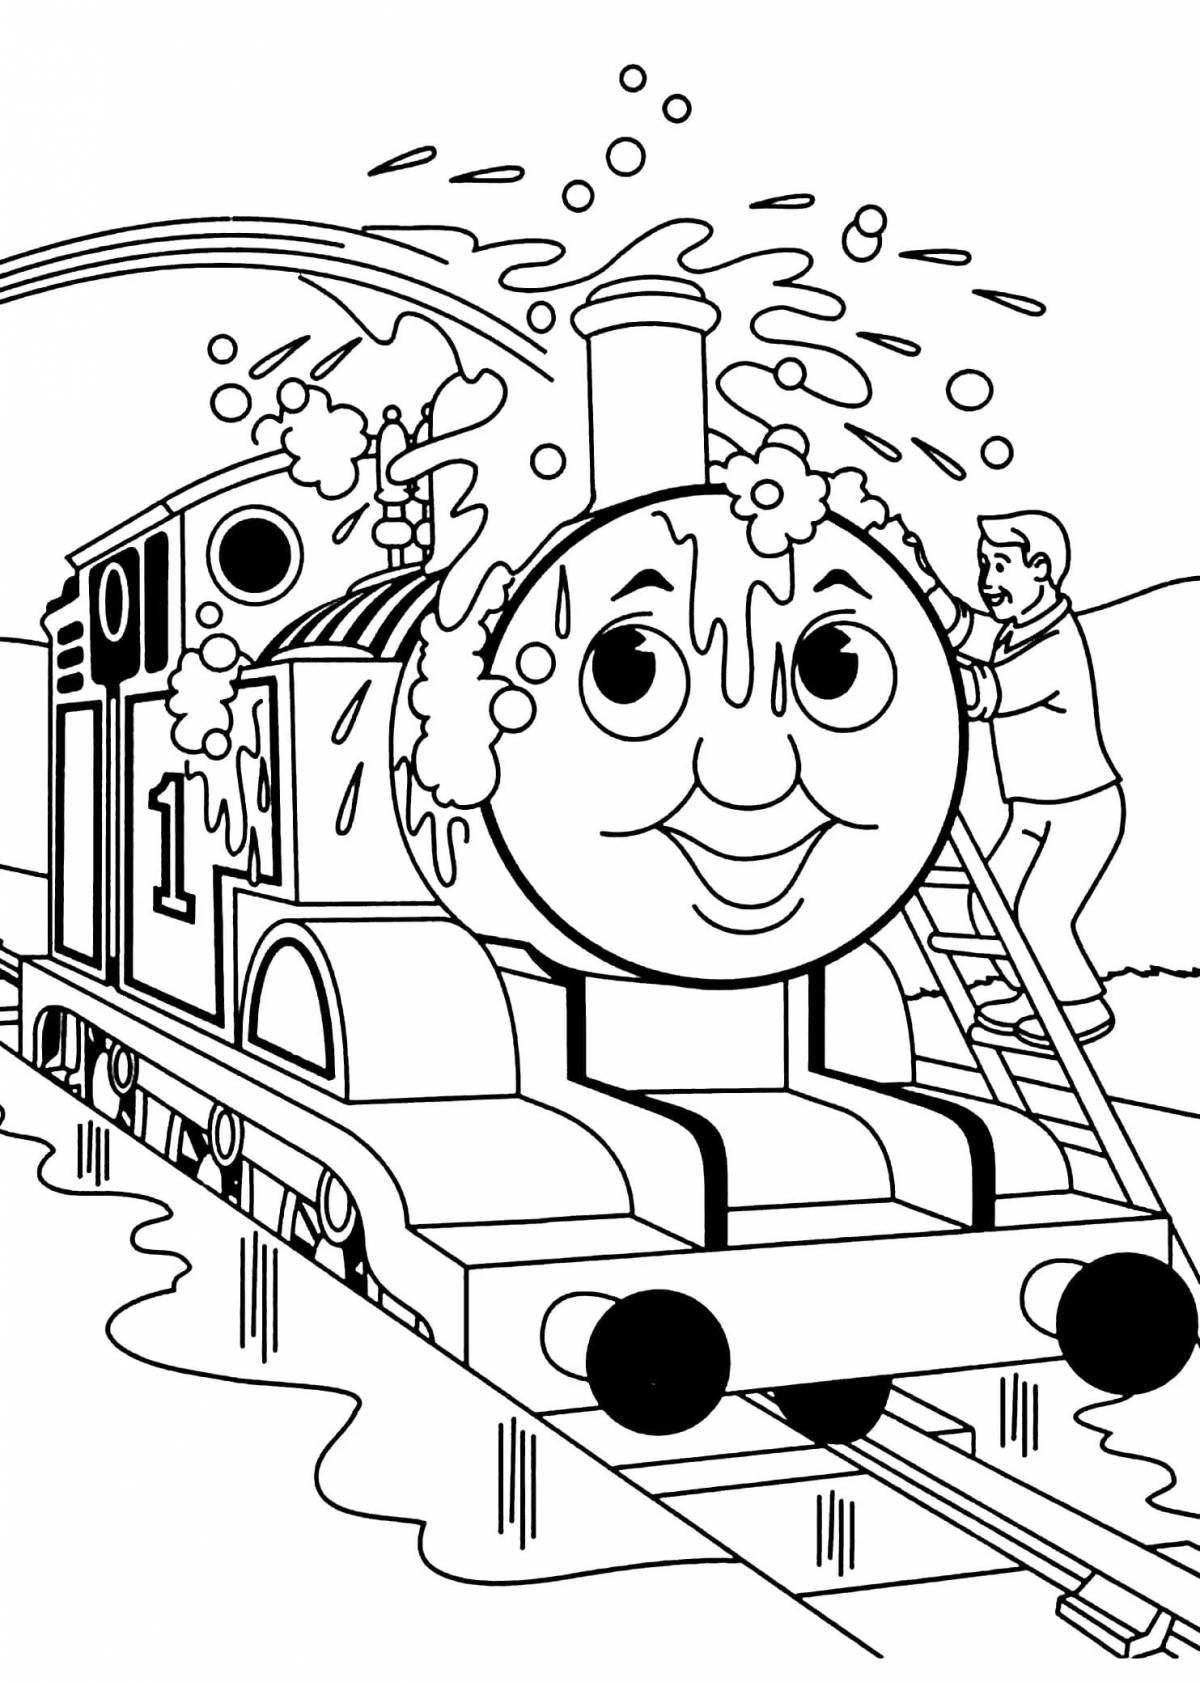 Привлекательный мультфильм о поезде